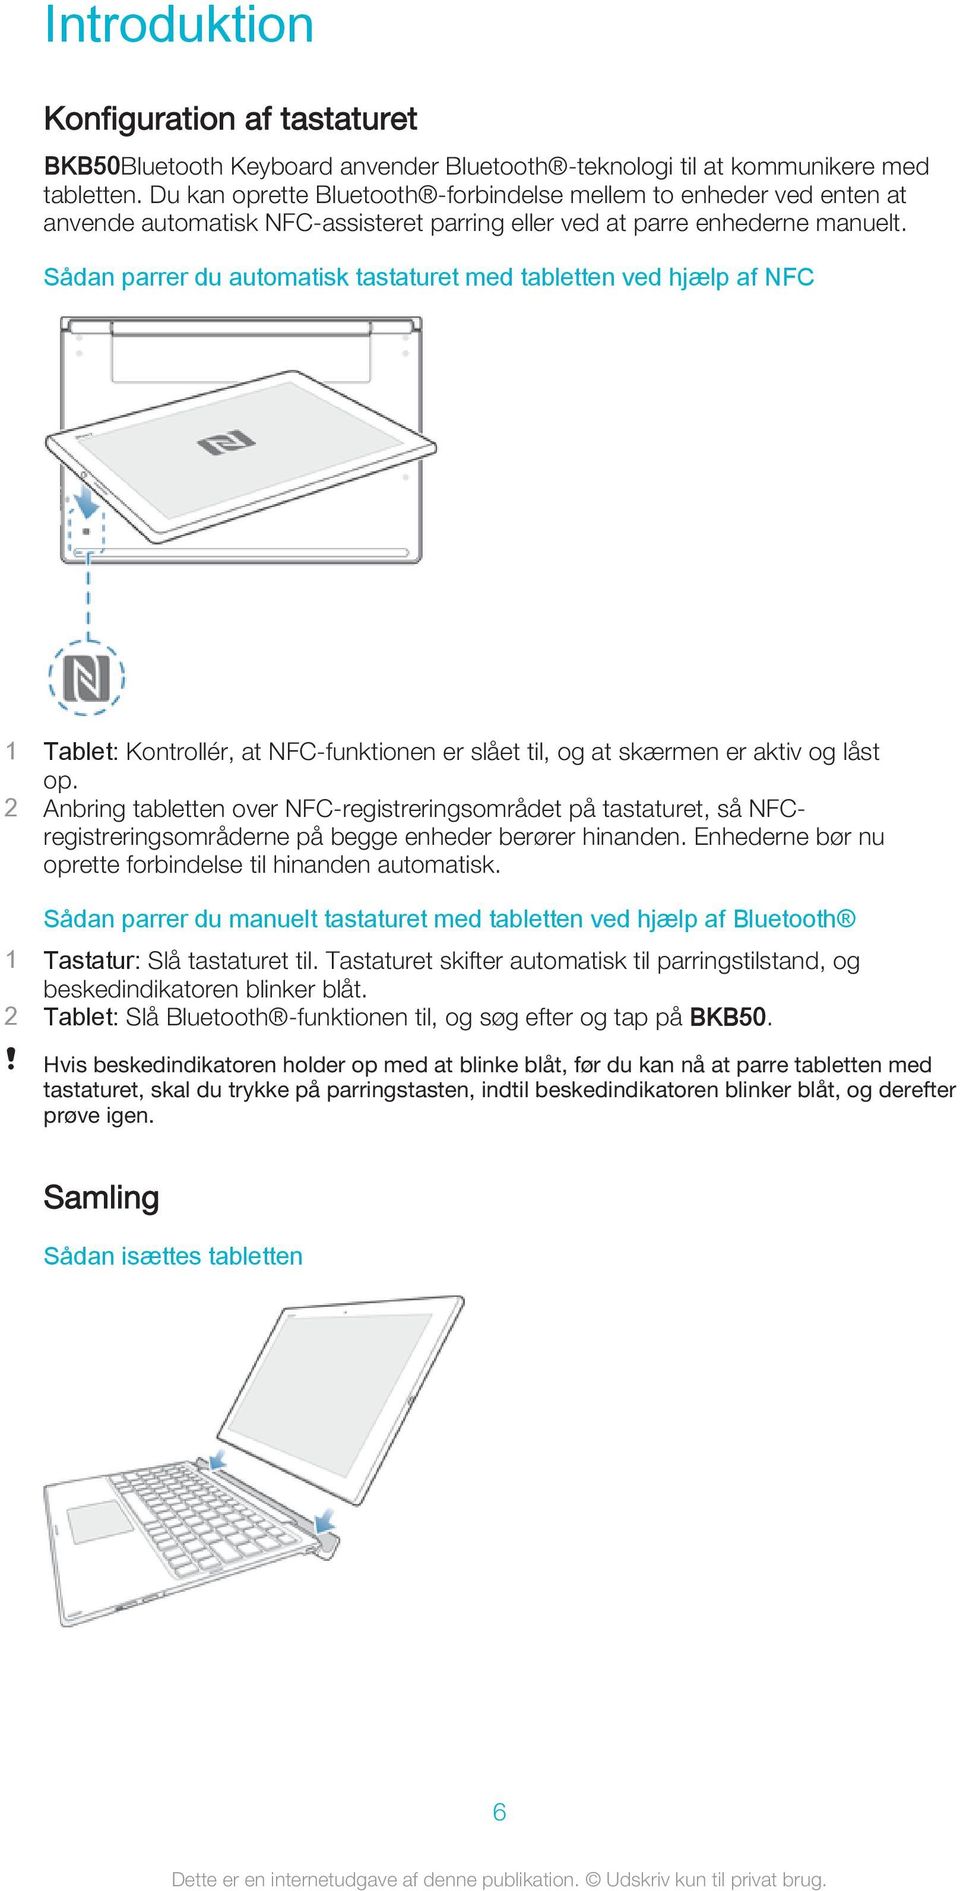 Sådan parrer du automatisk tastaturet med tabletten ved hjælp af NFC 1 Tablet: Kontrollér, at NFC-funktionen er slået til, og at skærmen er aktiv og låst op.